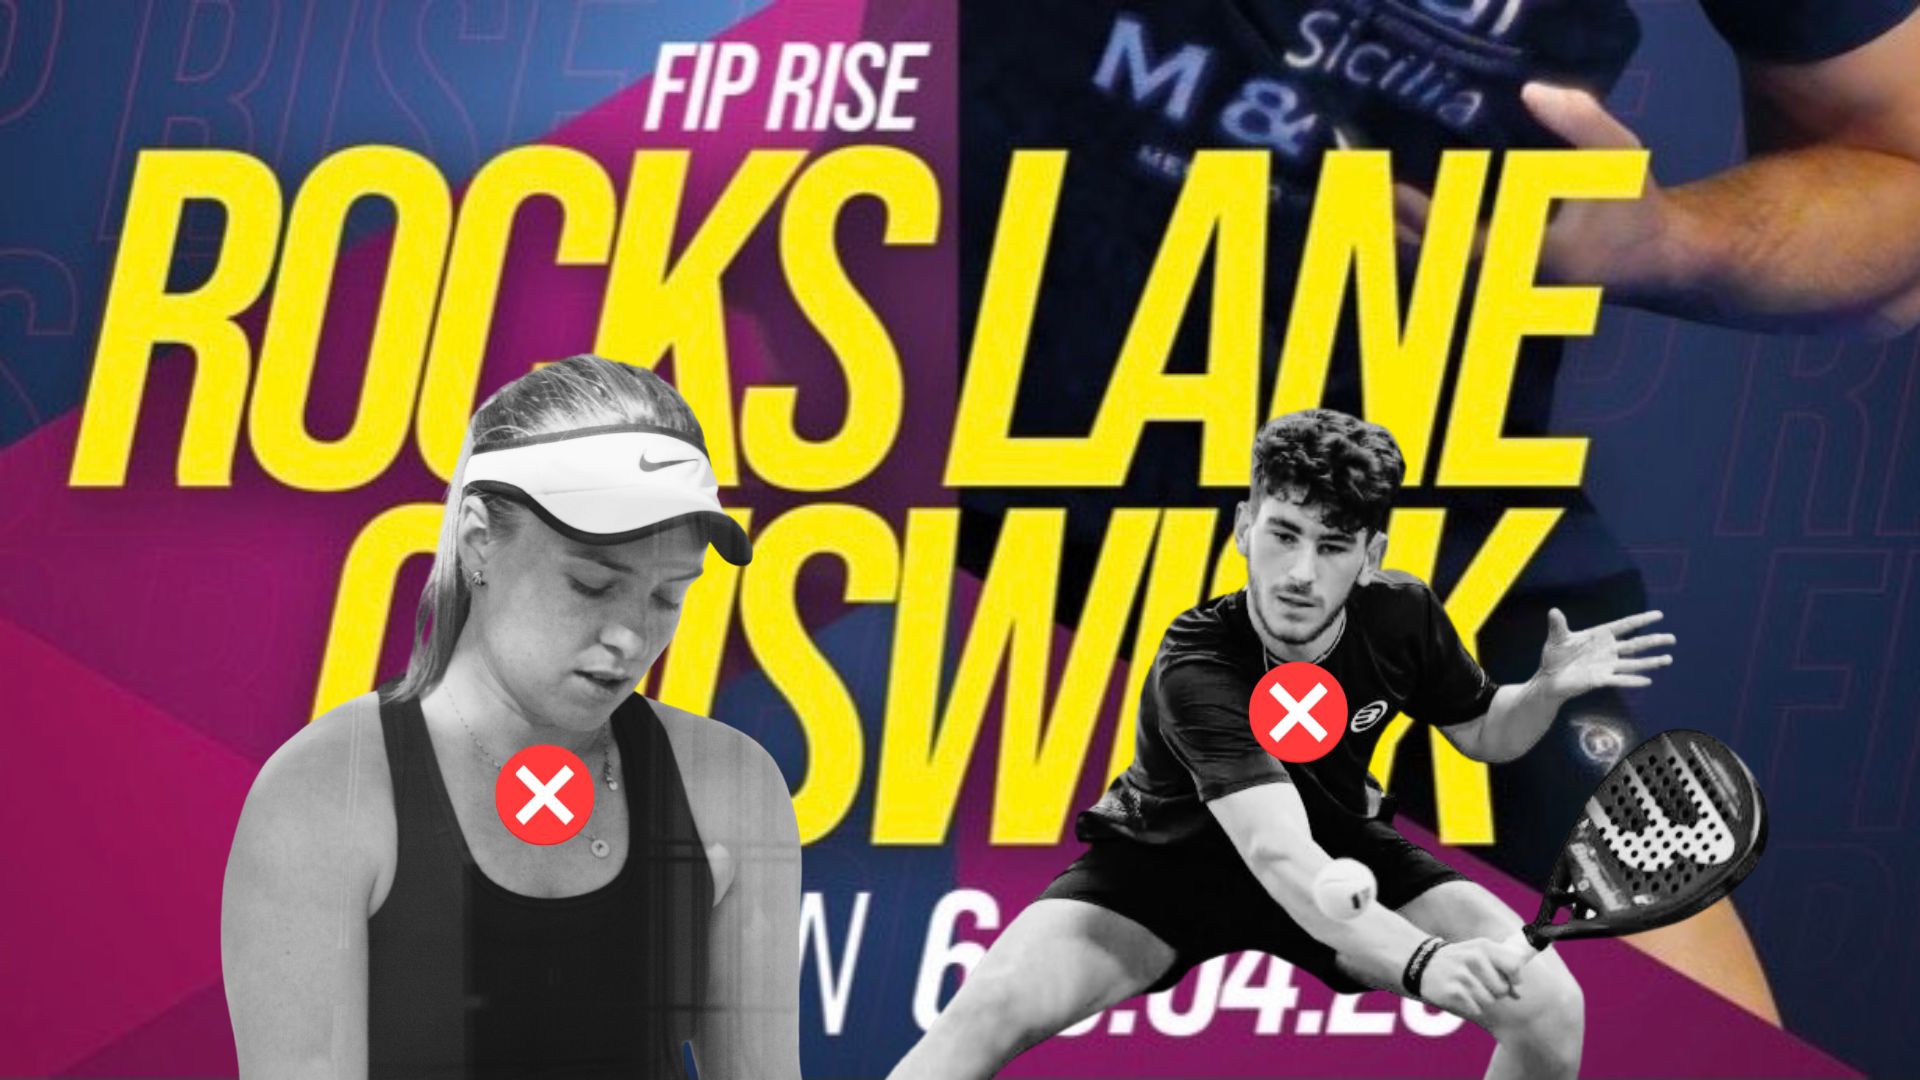 FIP Rise Rock Lane Chiswick – Det er slut for franskmændene